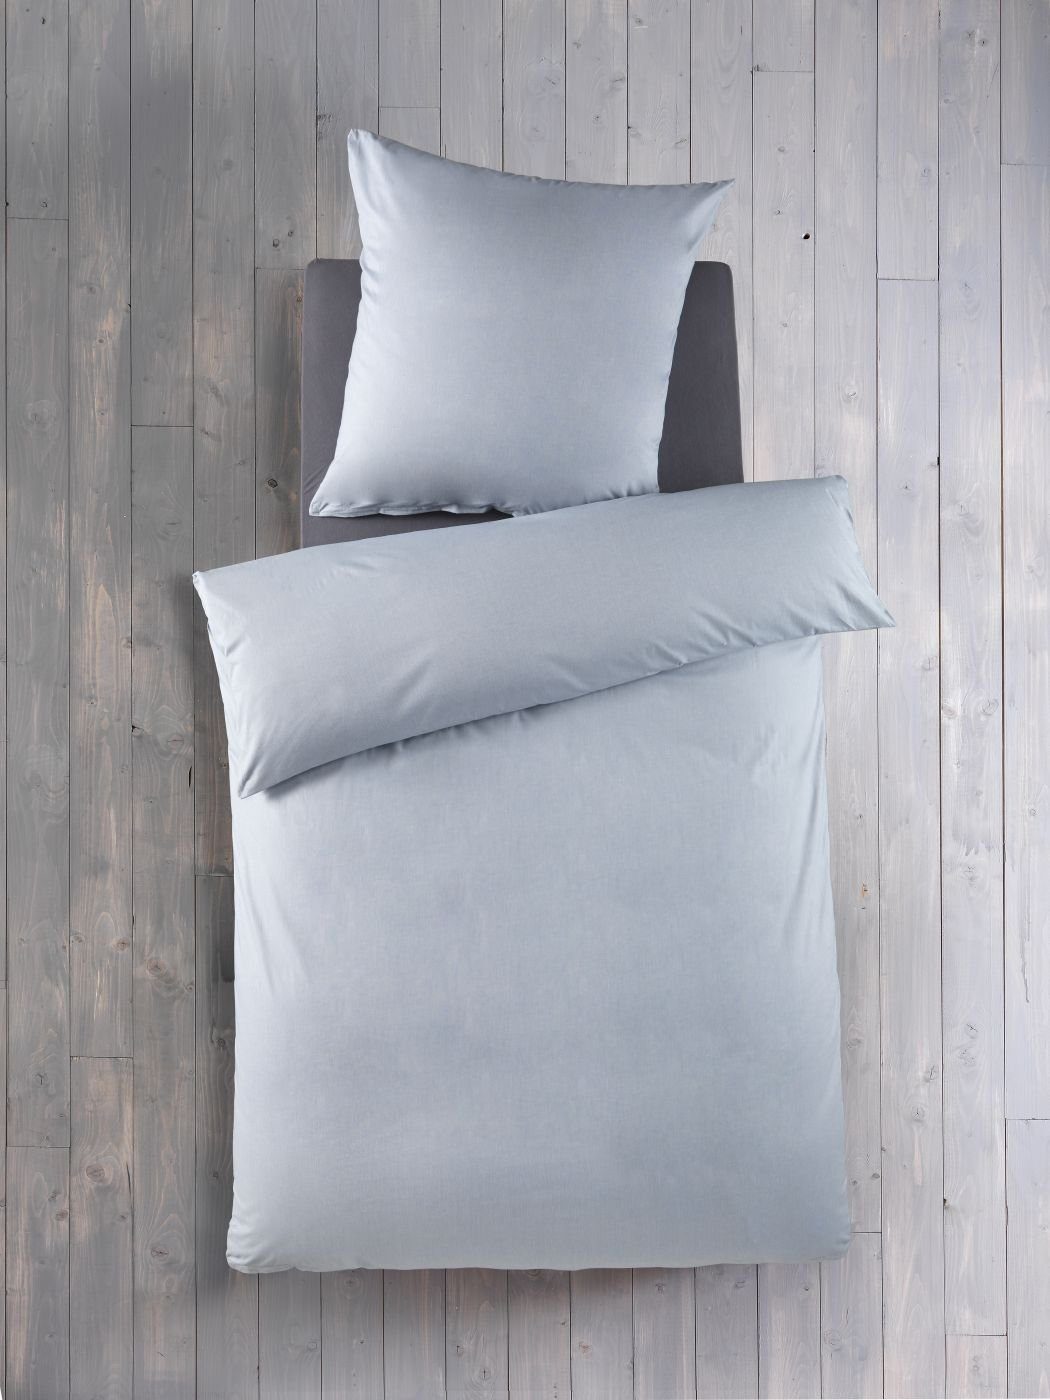 Bettwäsche Chambray 135 cm x 200 cm eisblau, Optidream, Baumolle, 2 teilig, Bettbezug Kopfkissenbezug Set kuschelig weich hochwertig